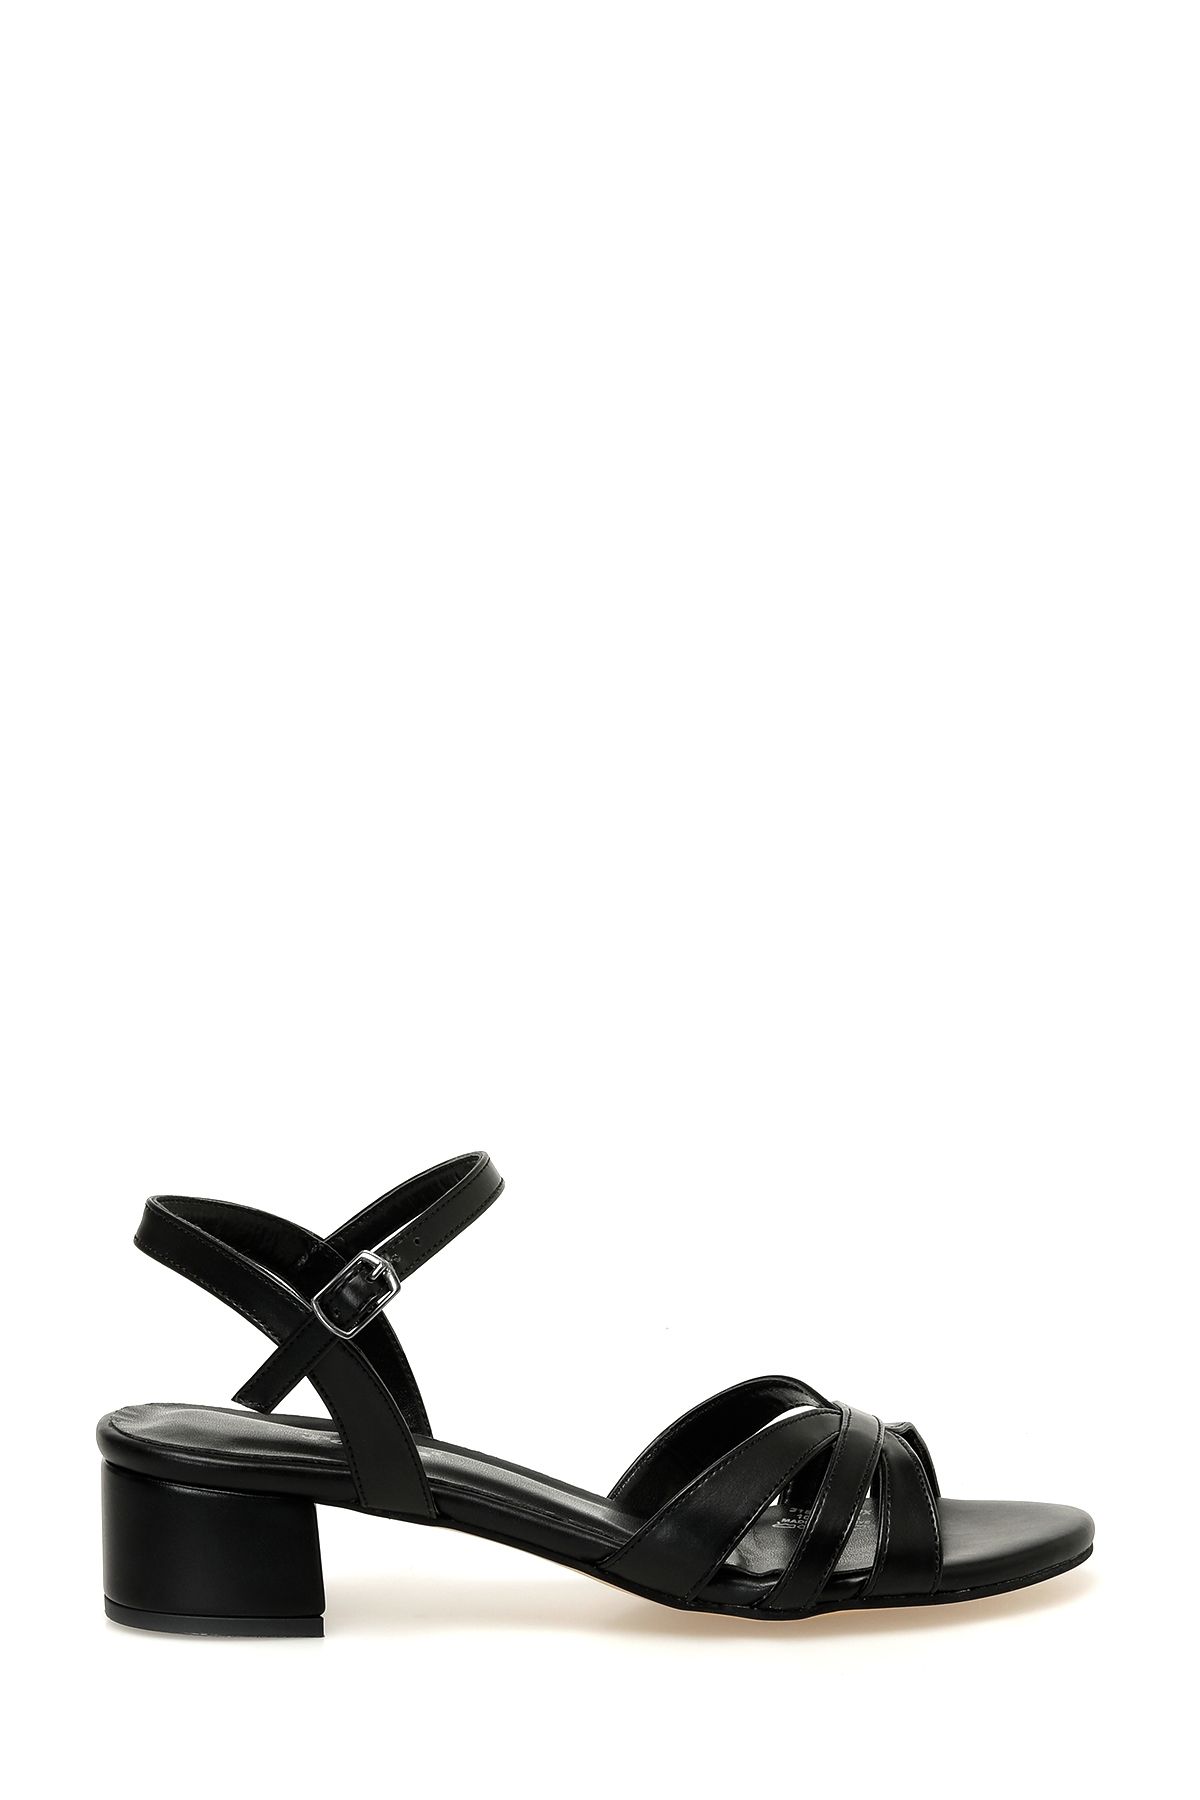 Polaris 315322.Z 4FX Siyah Kadın Topuklu Sandalet